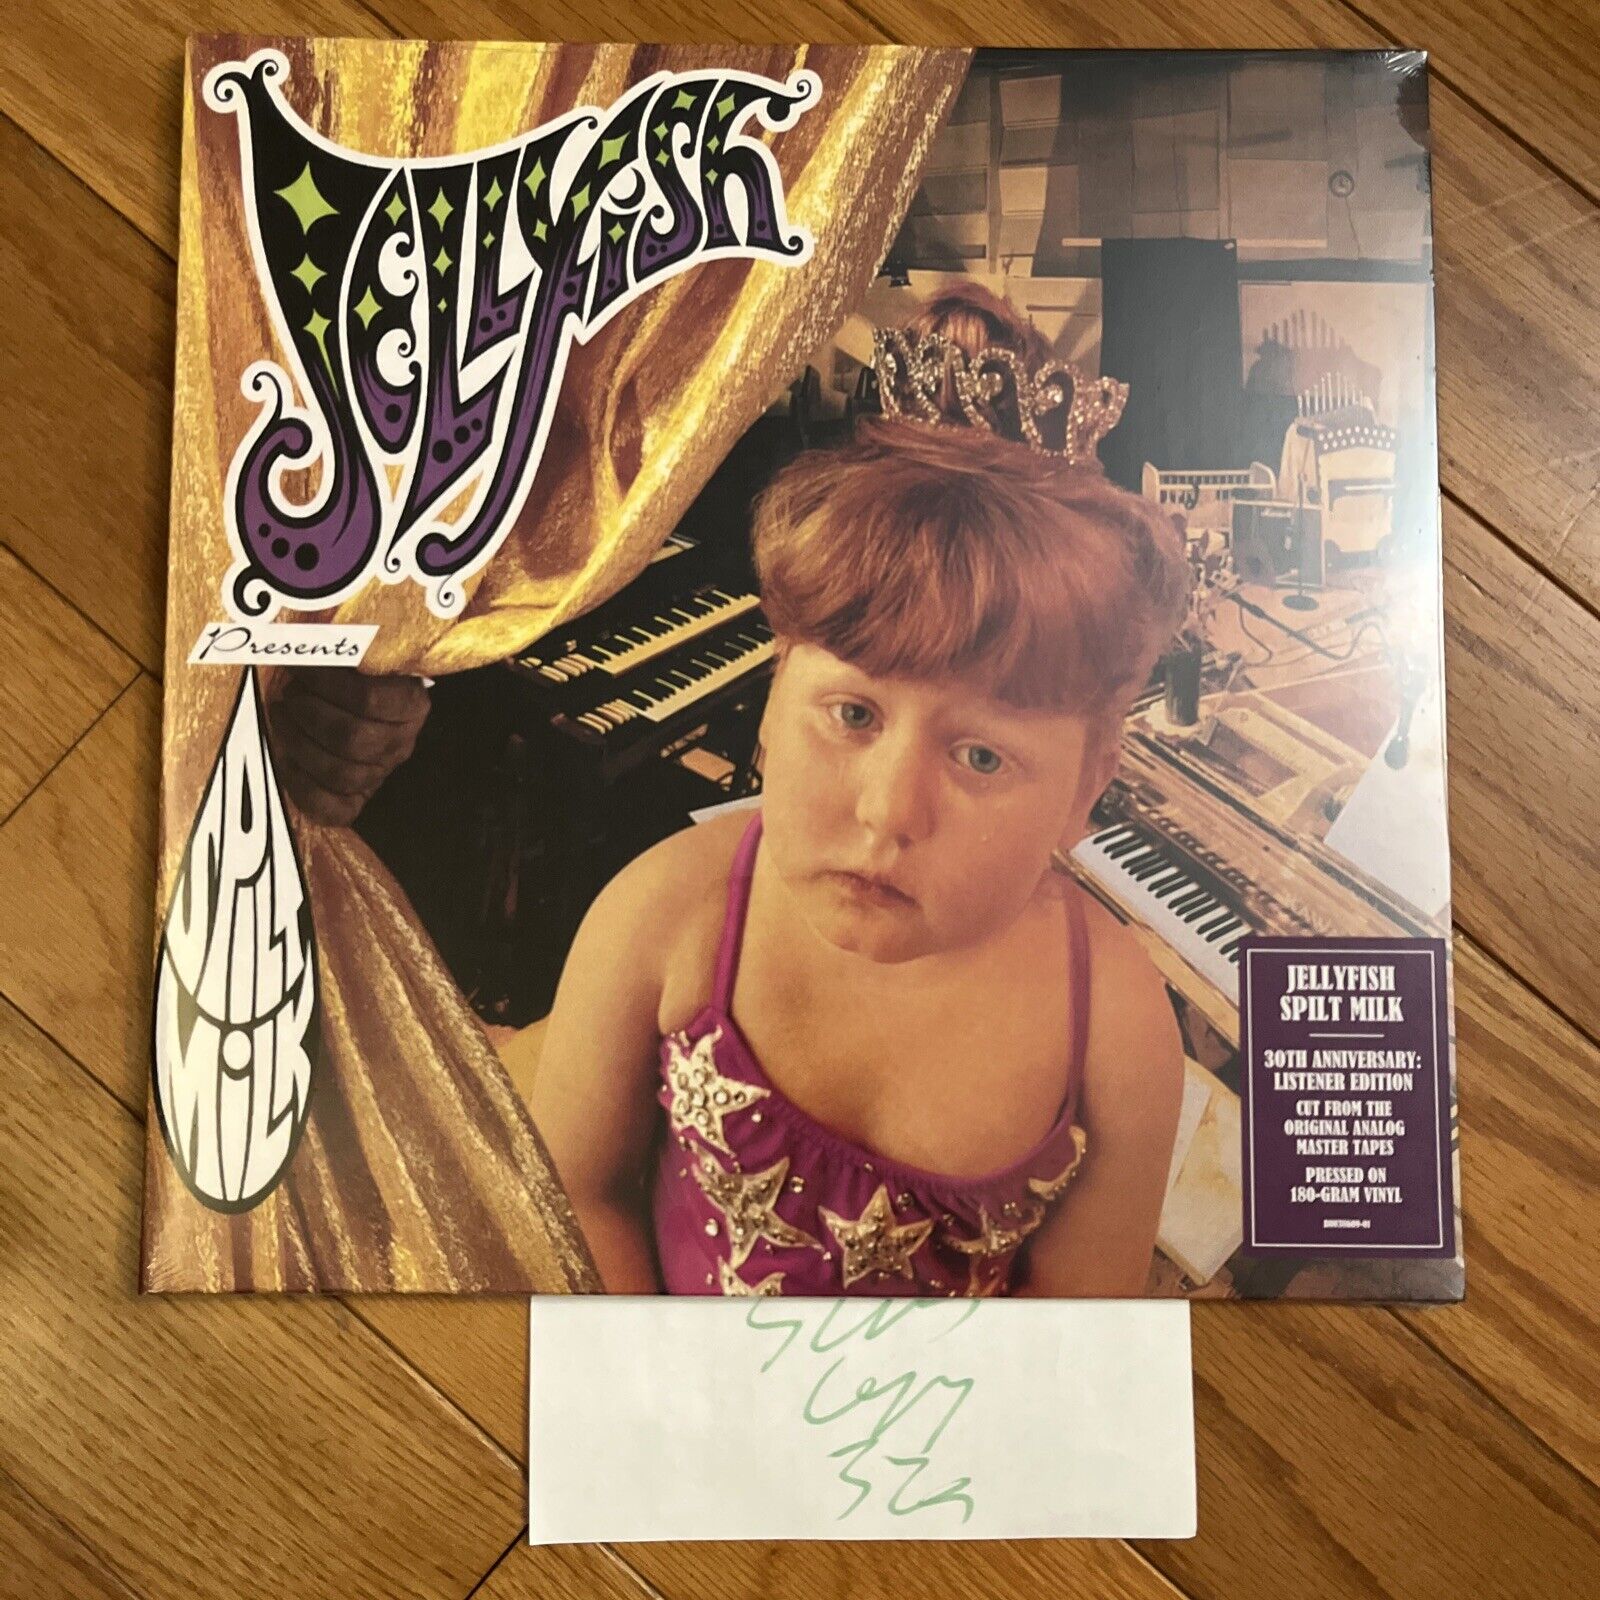 Jellyfish Spilt Milk 30th Anniversary Limited Listener Edition Vinyl LP In Hand